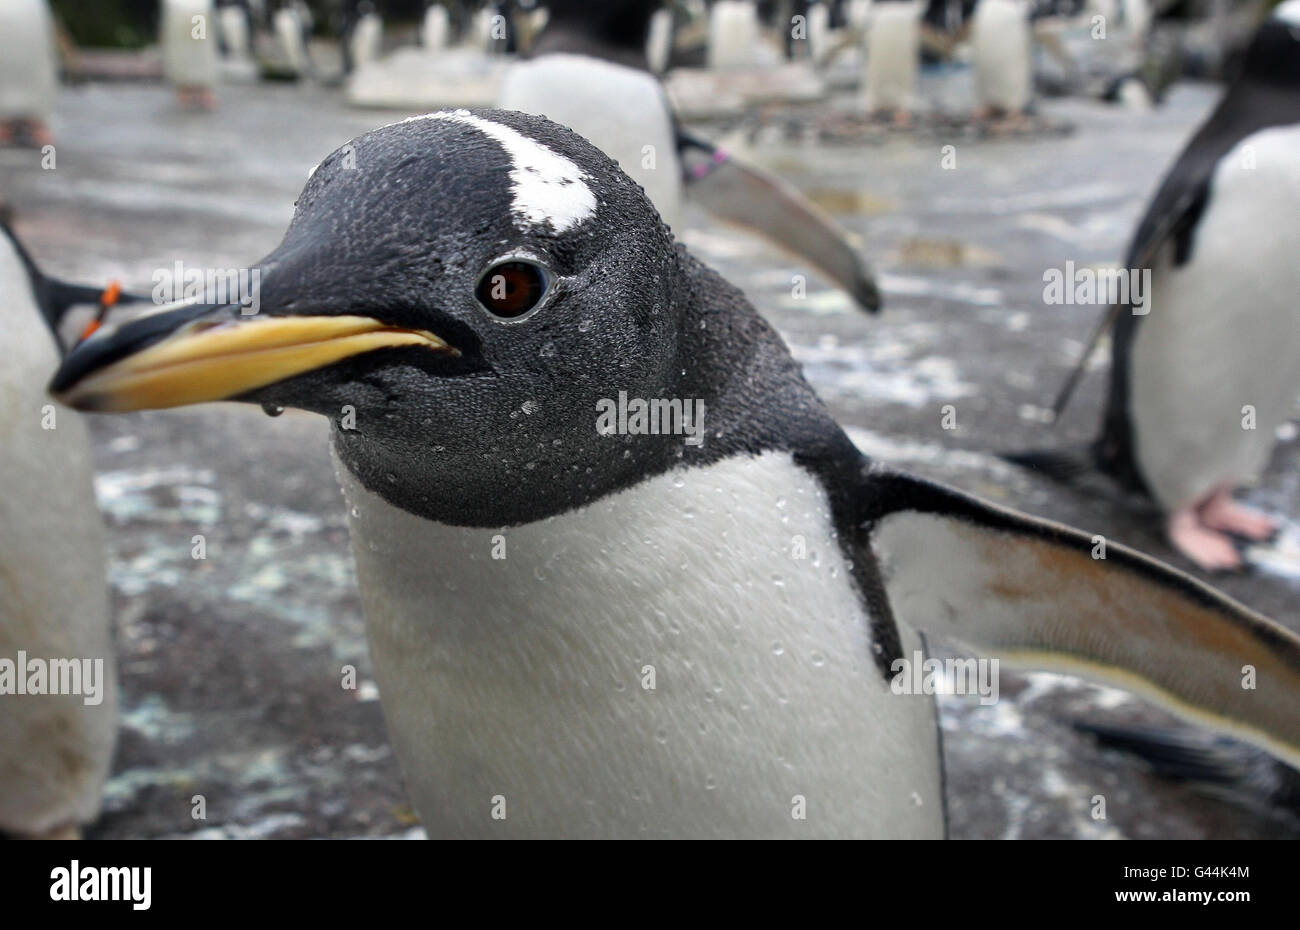 Gentoo-Pinguine zu Beginn der jährlichen Brutsaison im Zoo von Edinburgh. Zu Beginn der jährlichen Brutsaison der Pinguine haben die Zoohüter Nistringe im Gentoo Penguin Gehege aufgestellt. Die Vögel kehren zu den gleichen Nestern zurück, die sie in früheren Jahren benutzt haben und paaren sich normalerweise mit demselben Partner. Stockfoto